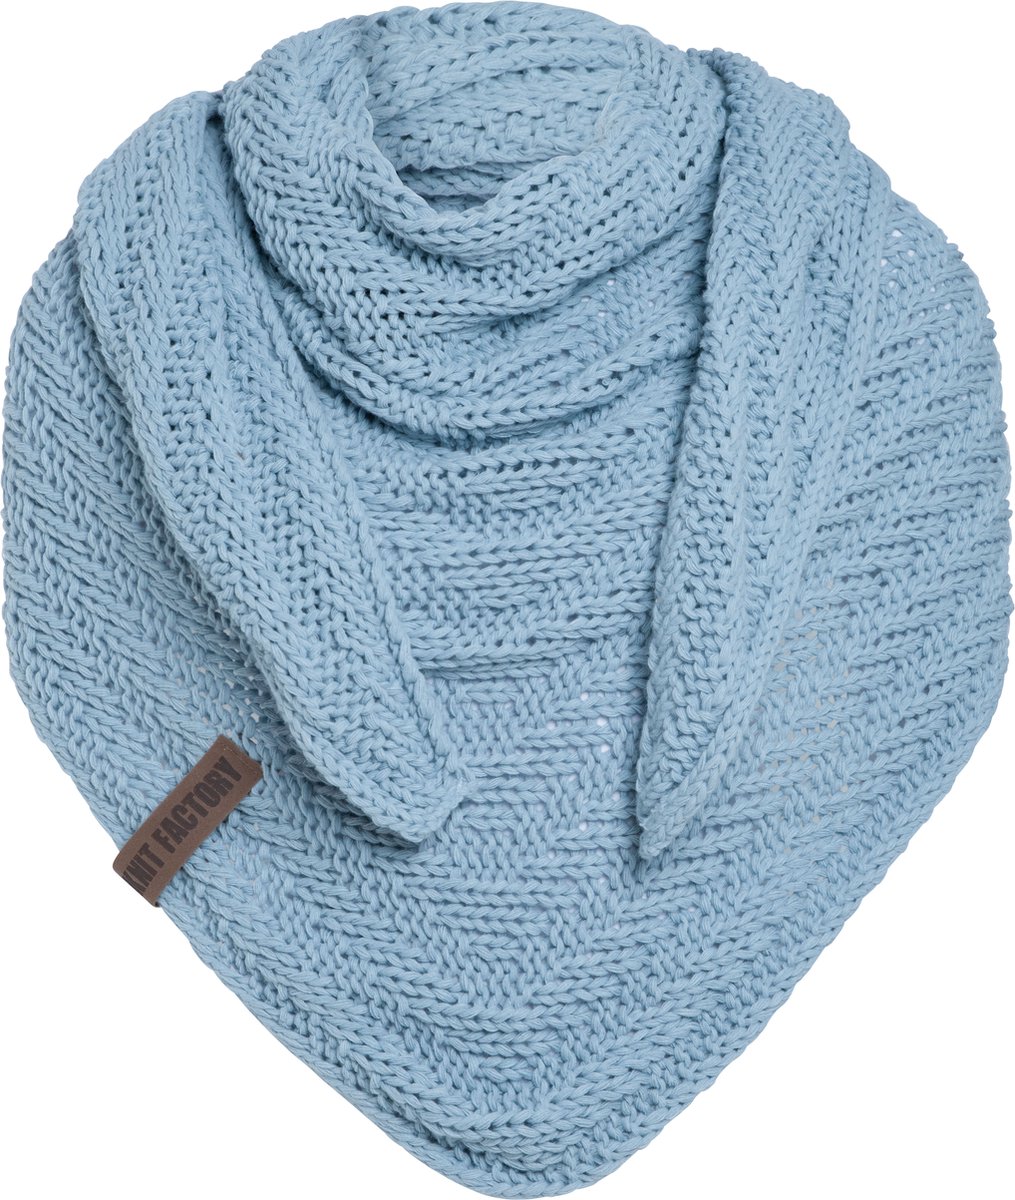 Knit Factory Sally Gebreide Omslagdoek - Driehoek Sjaal Dames - Dames sjaal - Wintersjaal - Stola - Wollen sjaal - Licht blauwe sjaal - Celeste - 220x85 cm - Grof gebreid